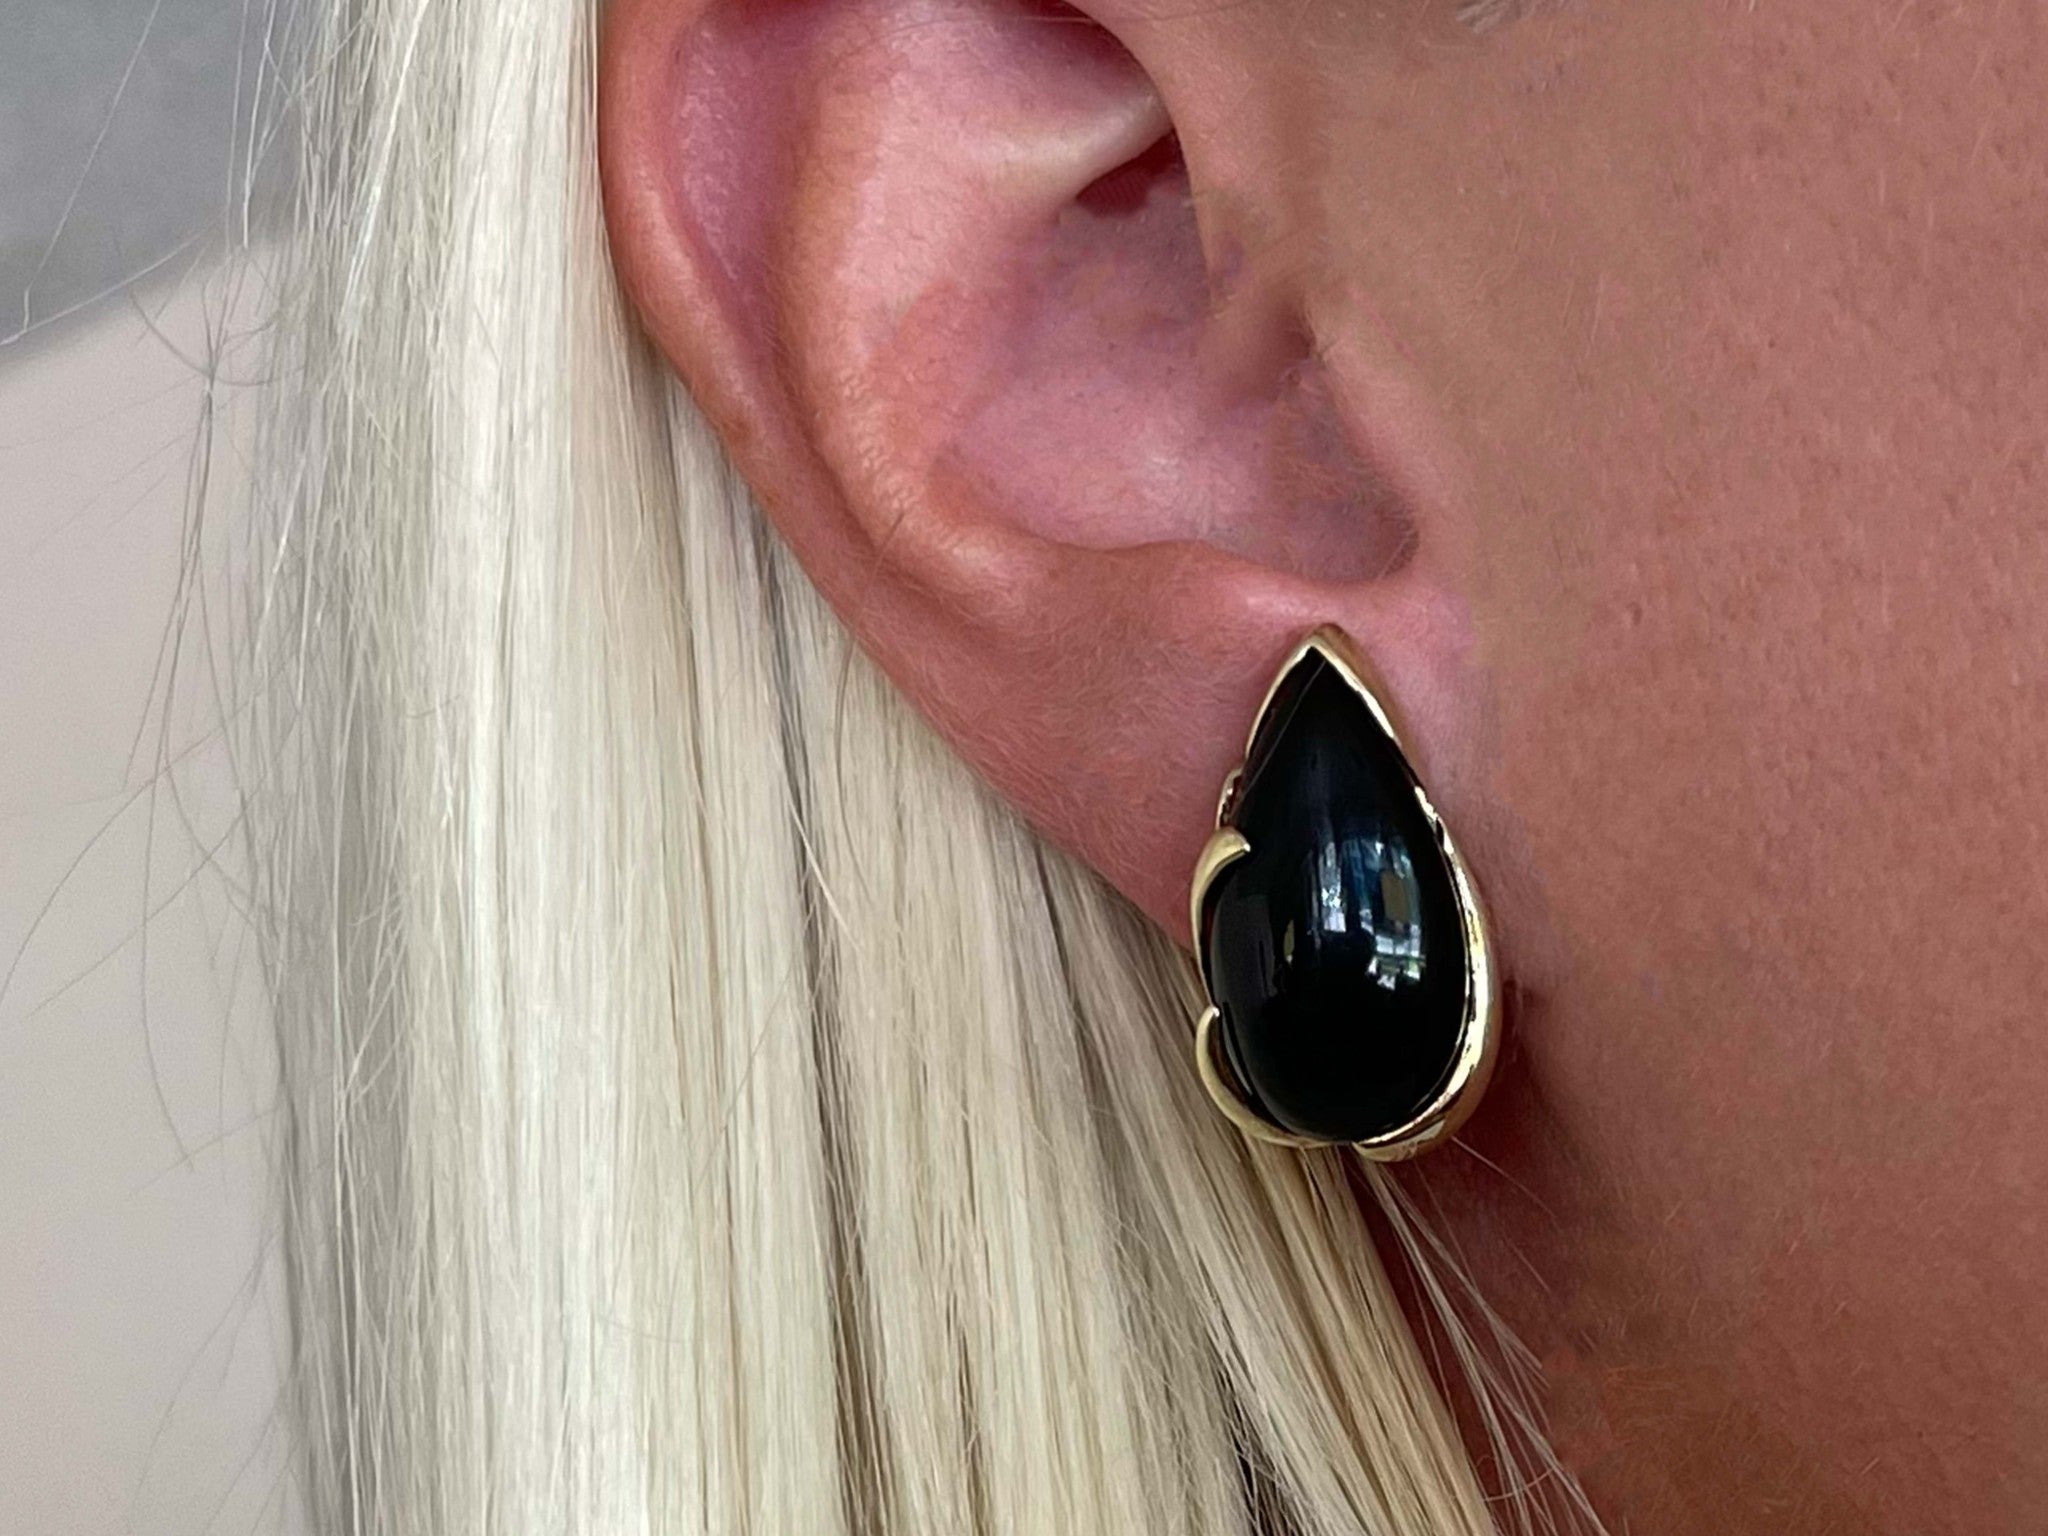 Pear Shaped Black Onyx Earrings in 14k Yellow Gold